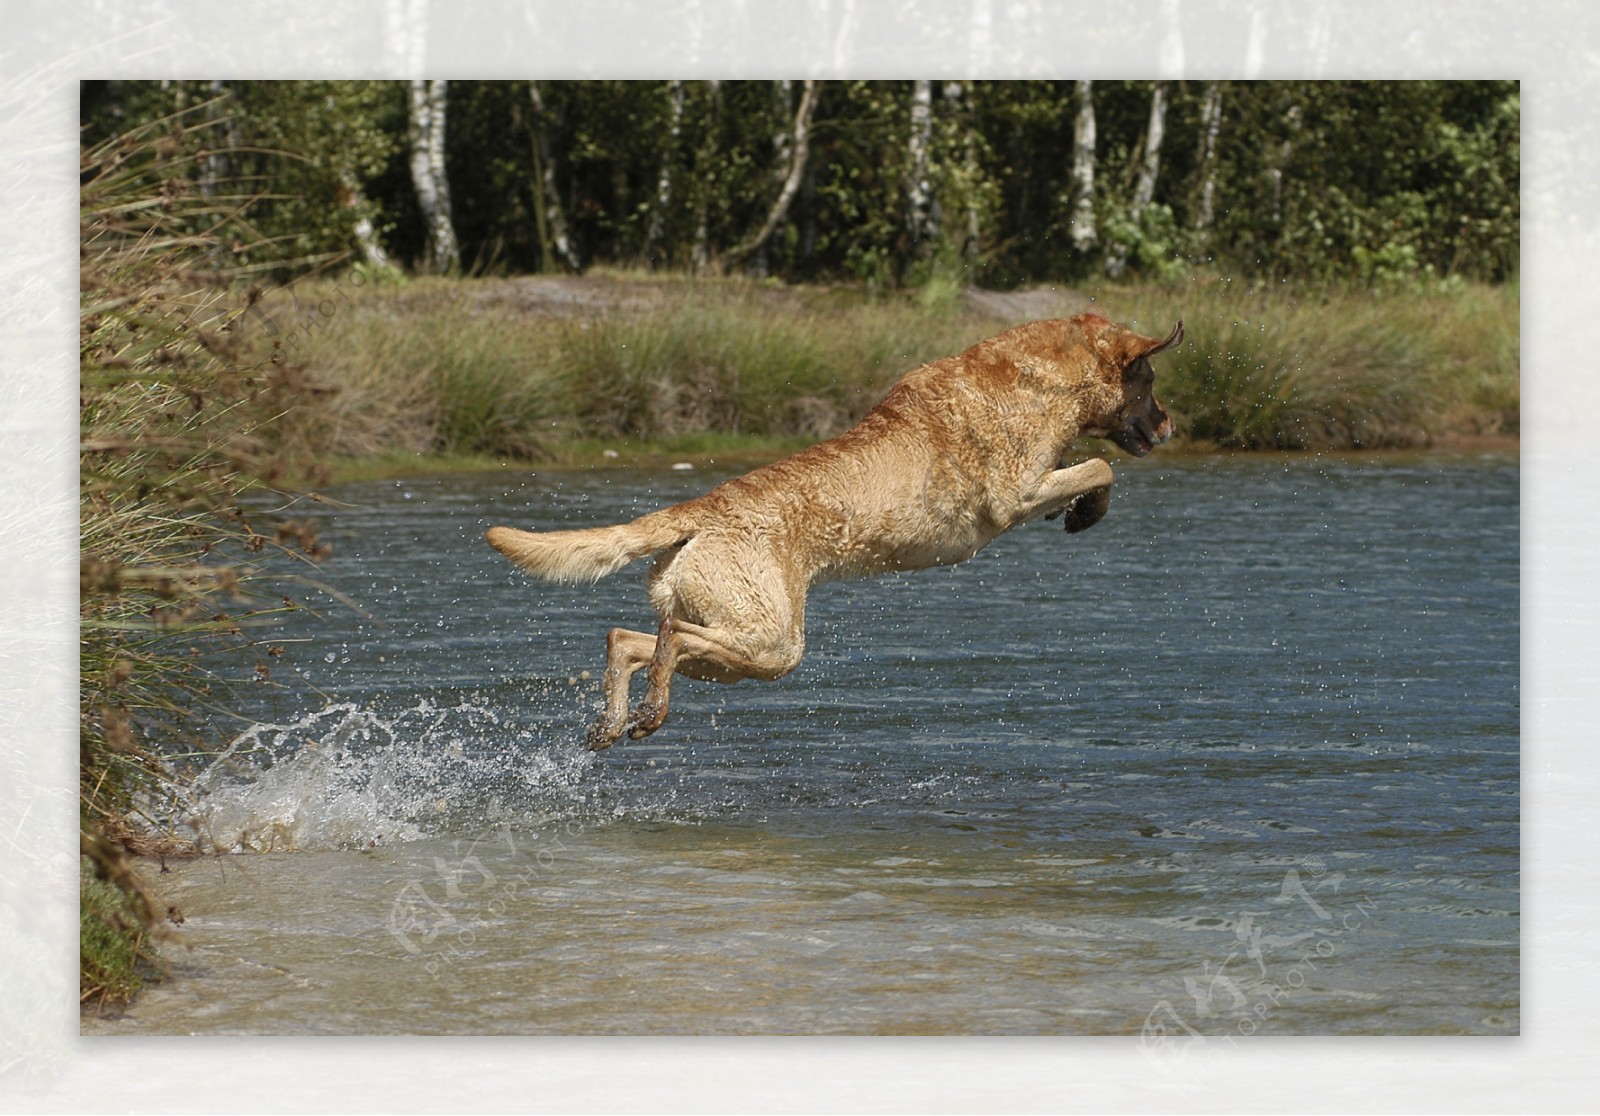 往水里跳的狗